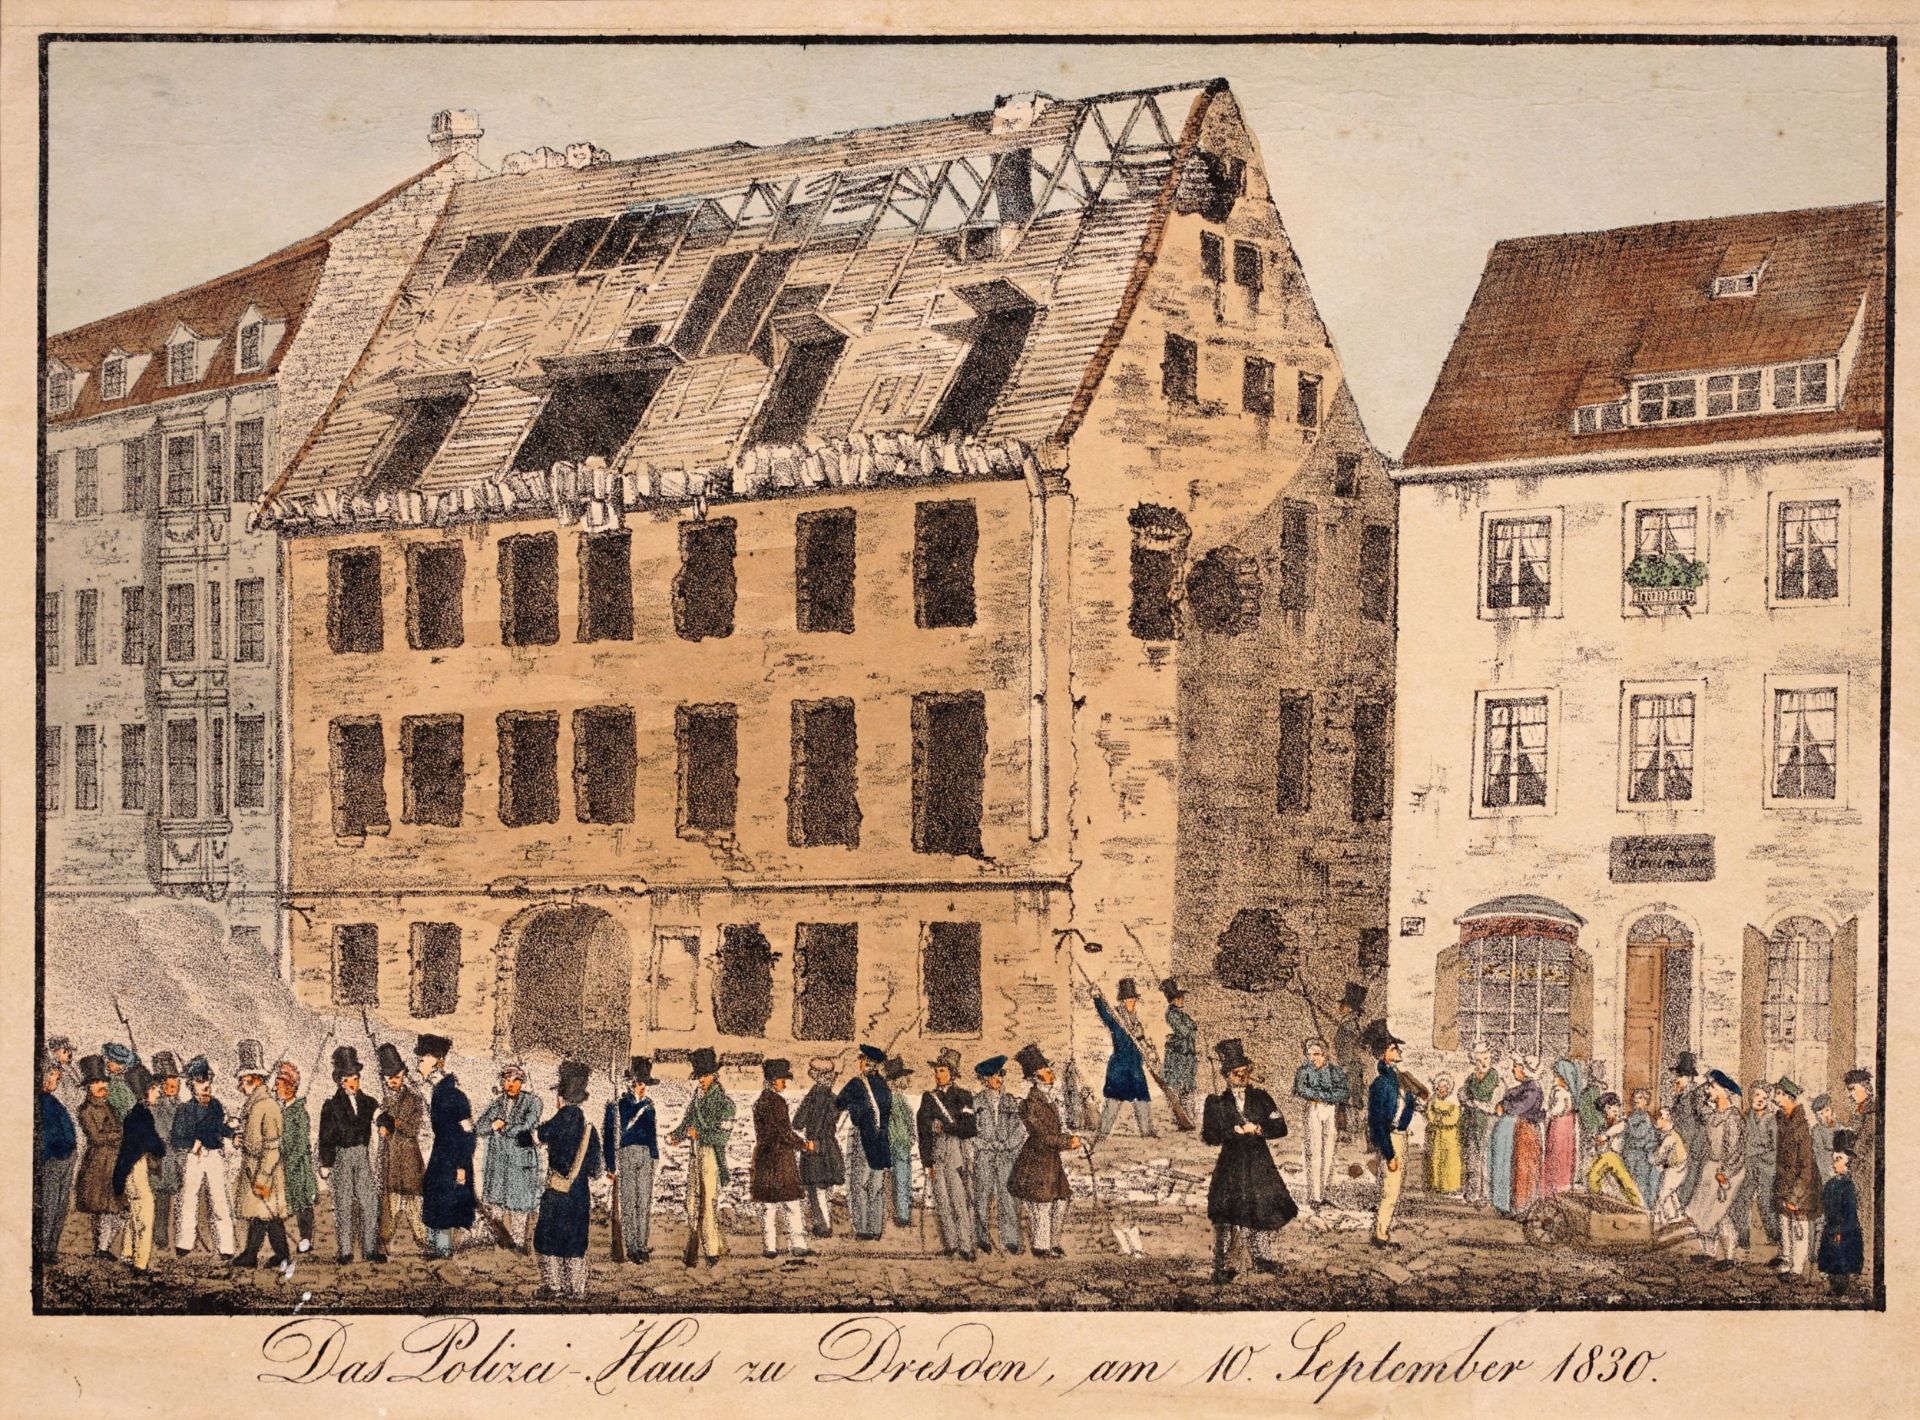 Unbekannter Künstler "Das Polizei-Haus zu Dresden, am 10. September 1830". 1830.